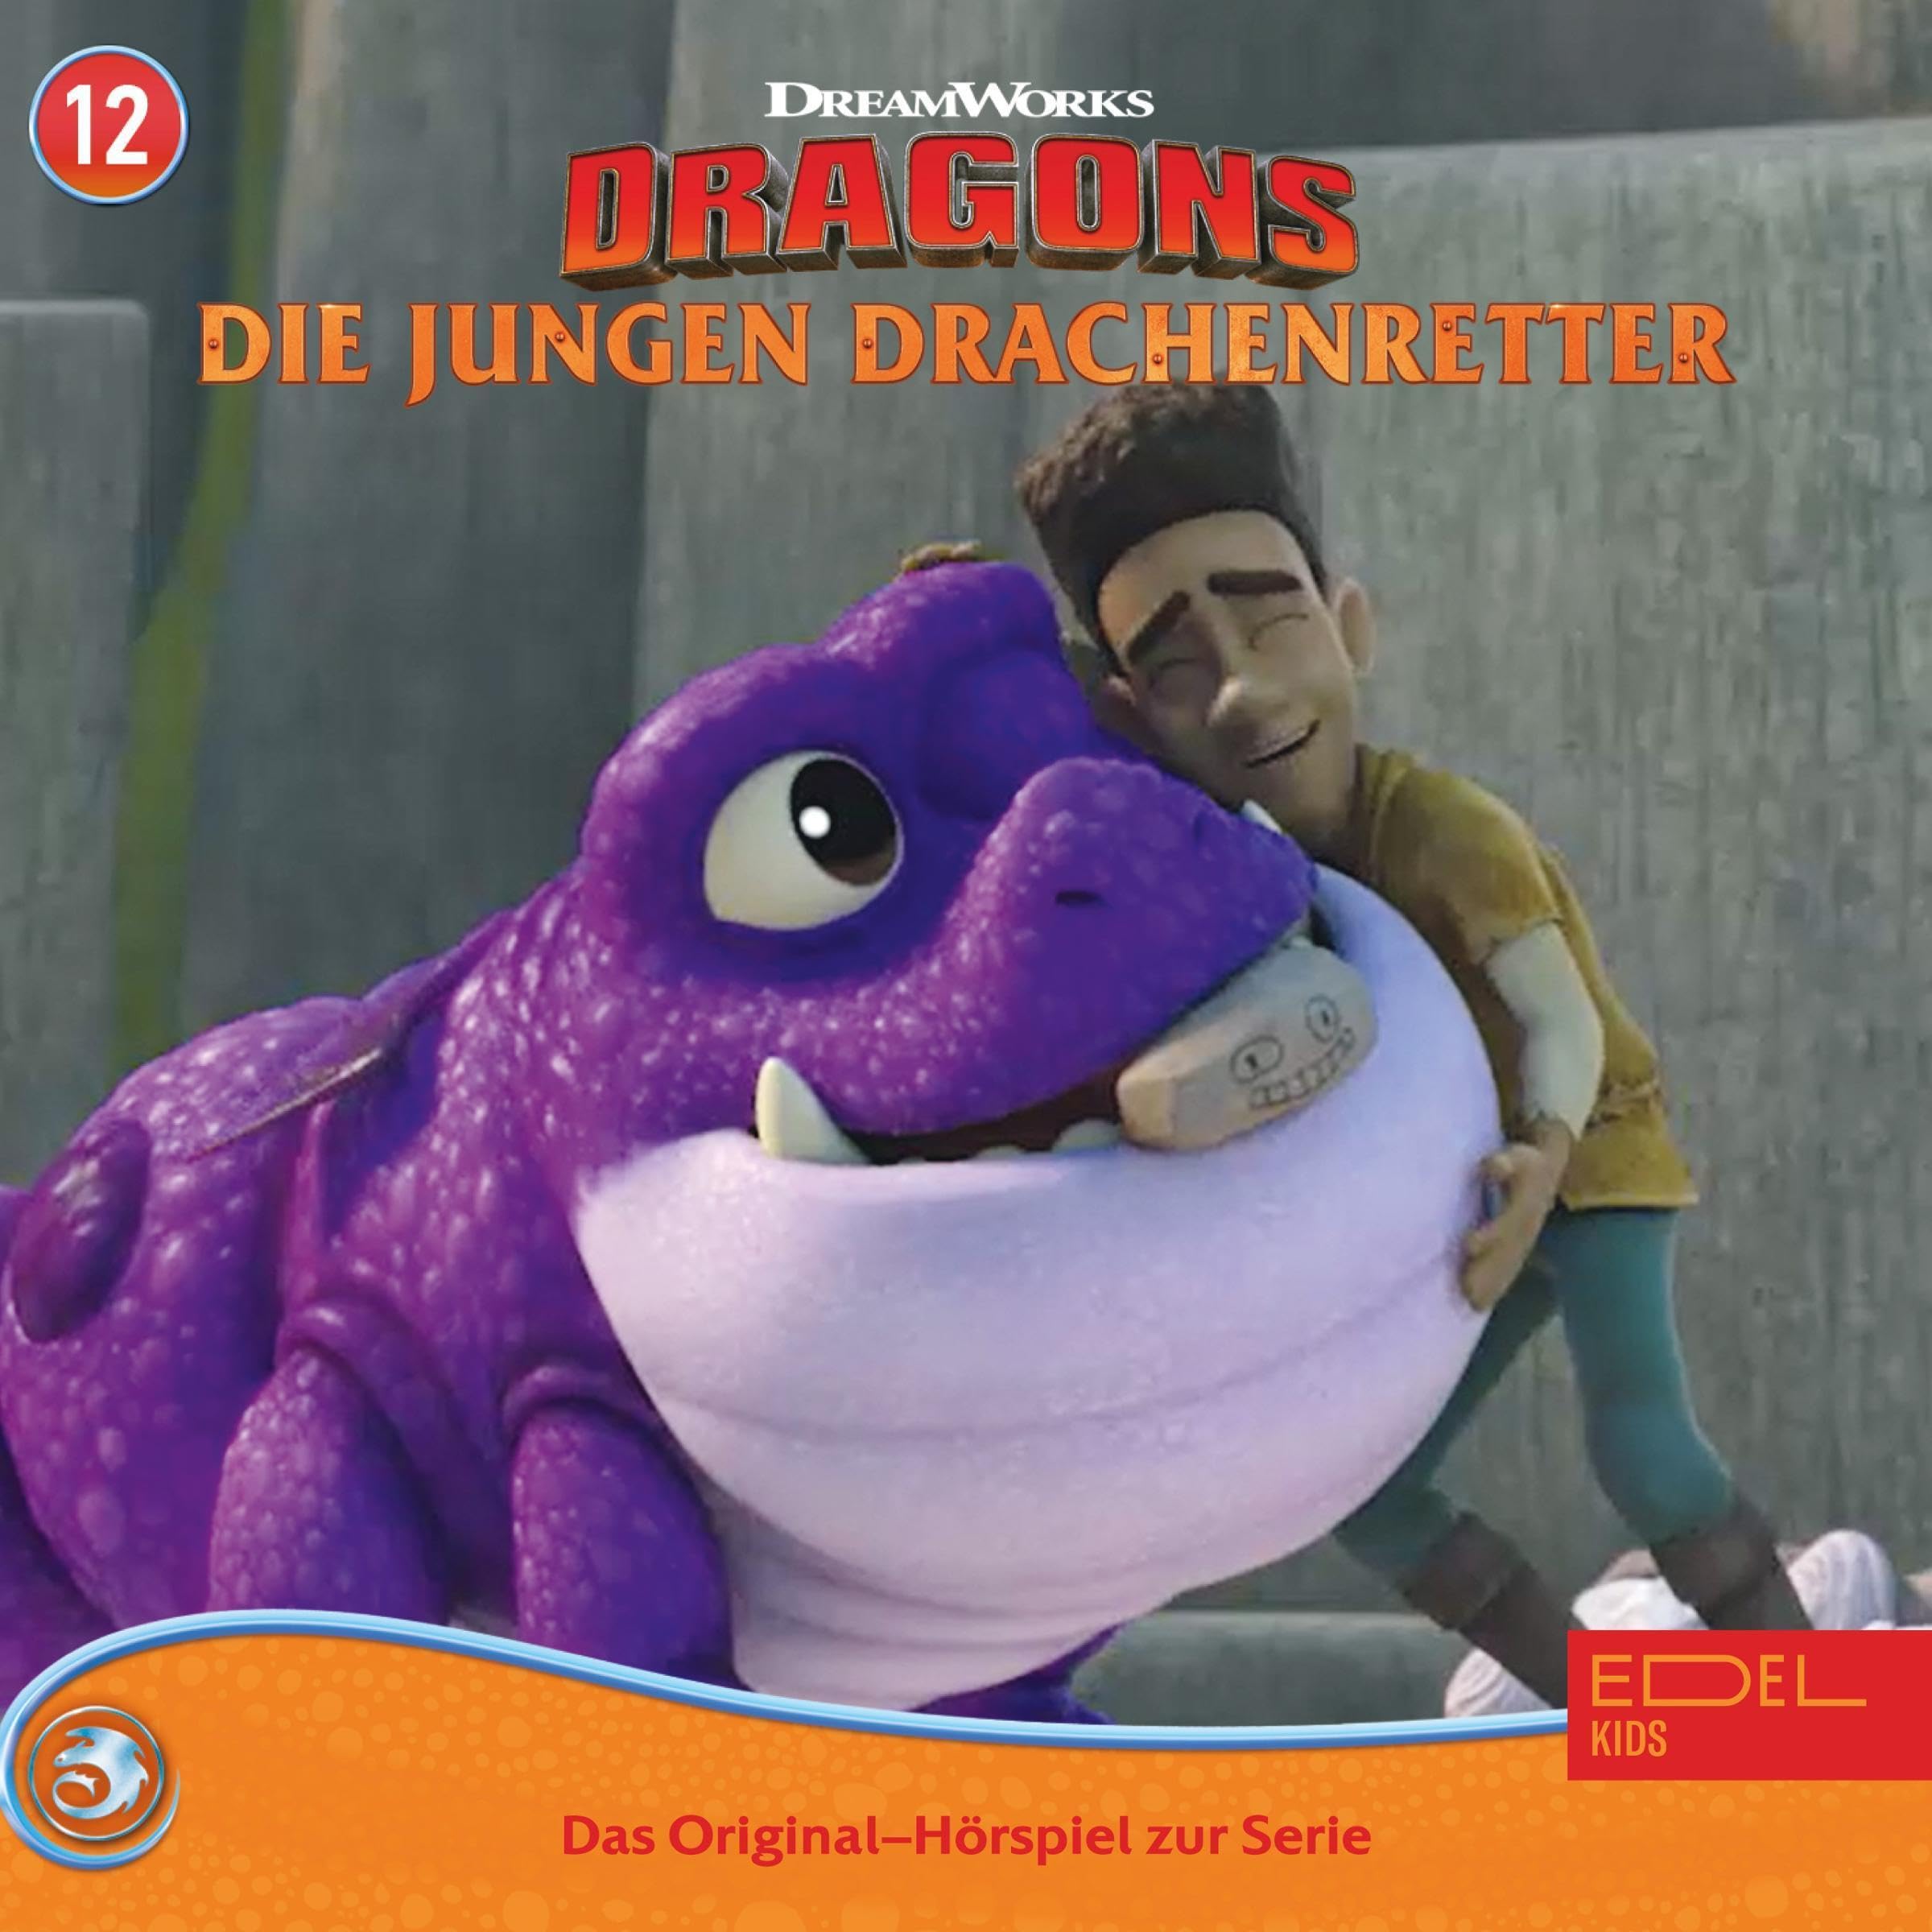 König Bubsler / Der Mechano-Multi-Drache. Das Original-Hörspiel zur TV-Serie: Dragons - Die jungen Drachenretter 12